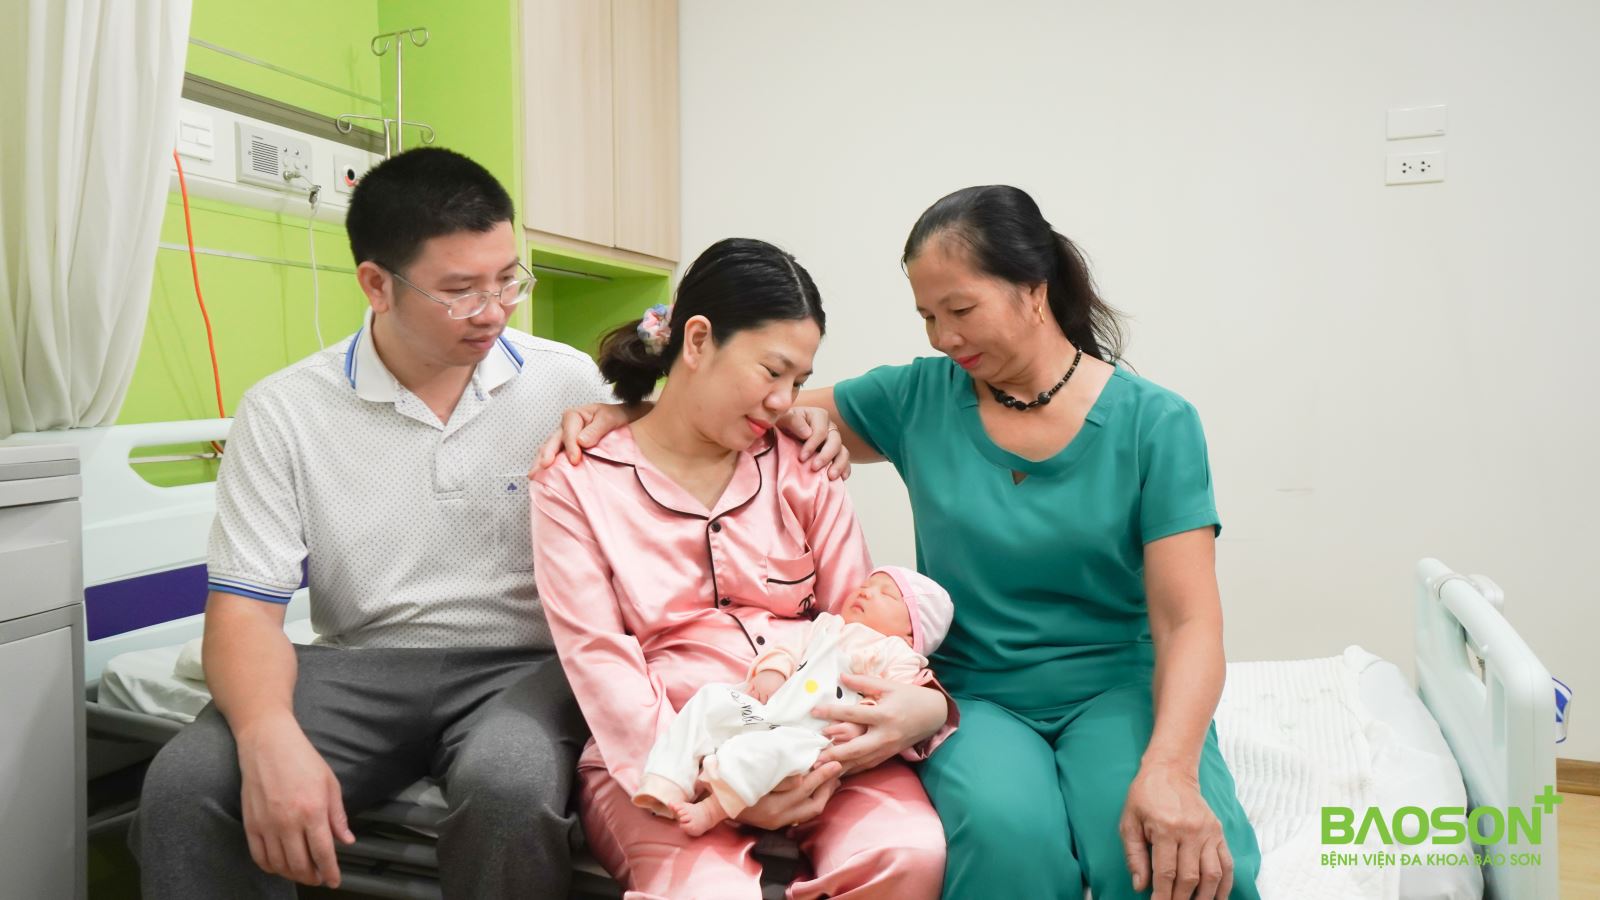 Ký ức sinh mổ khó quên của mẹ Hà Nội: Đi đẻ nhẹ nhàng, khi về còn được chụp ảnh newborn miễn phí